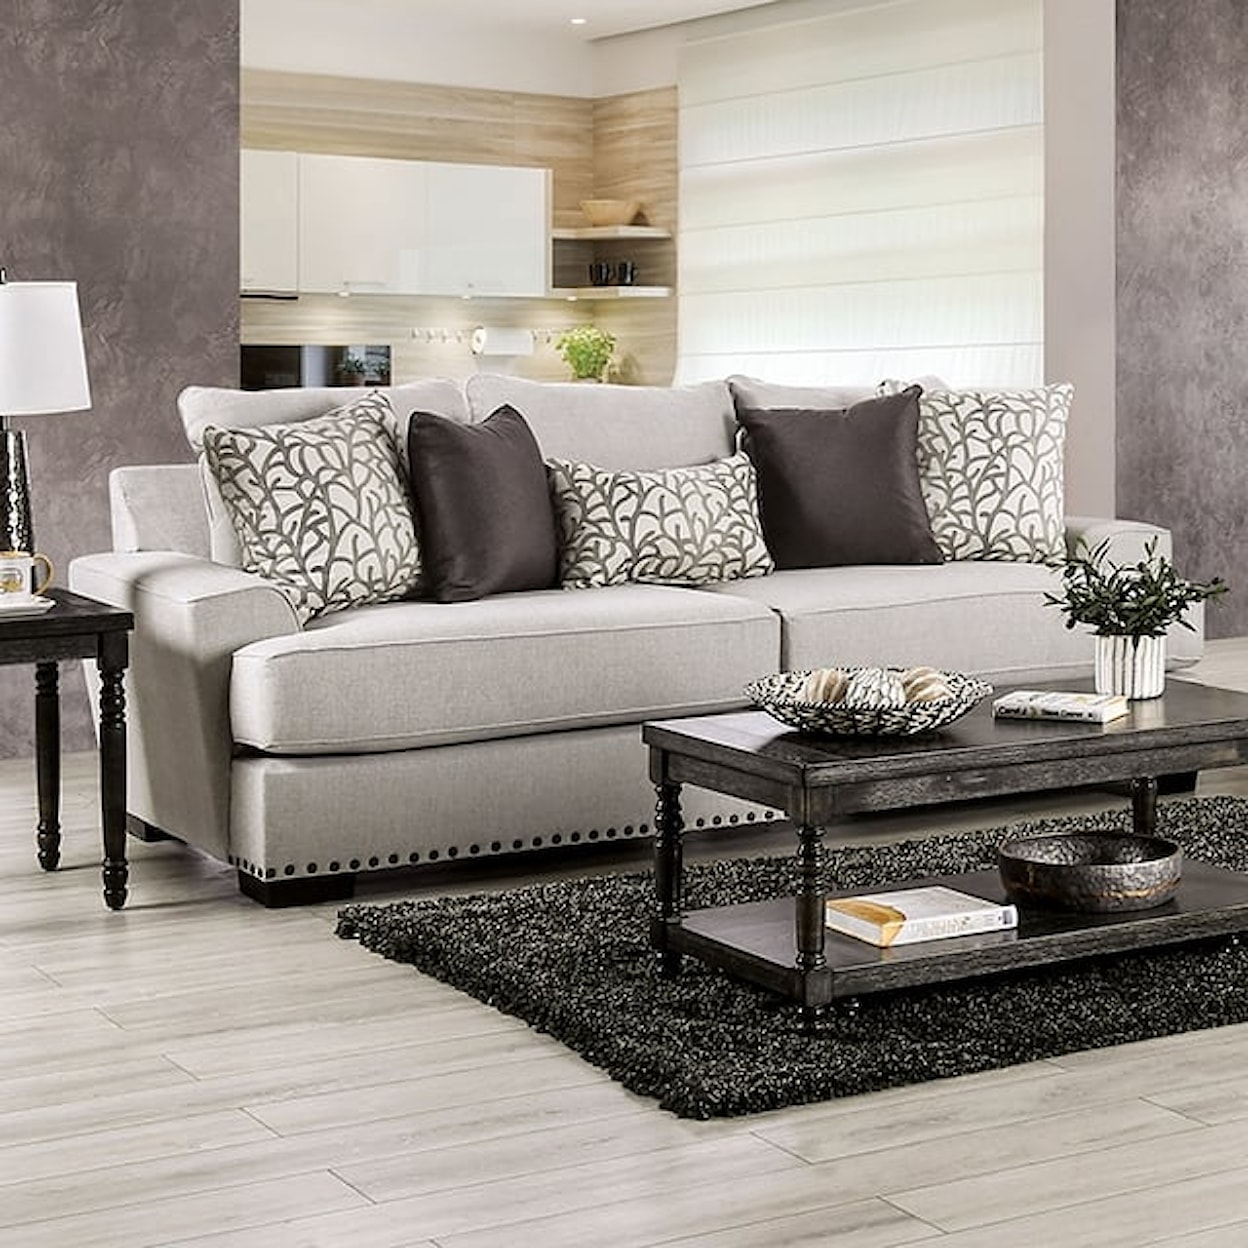 Furniture of America Picotee Sofa